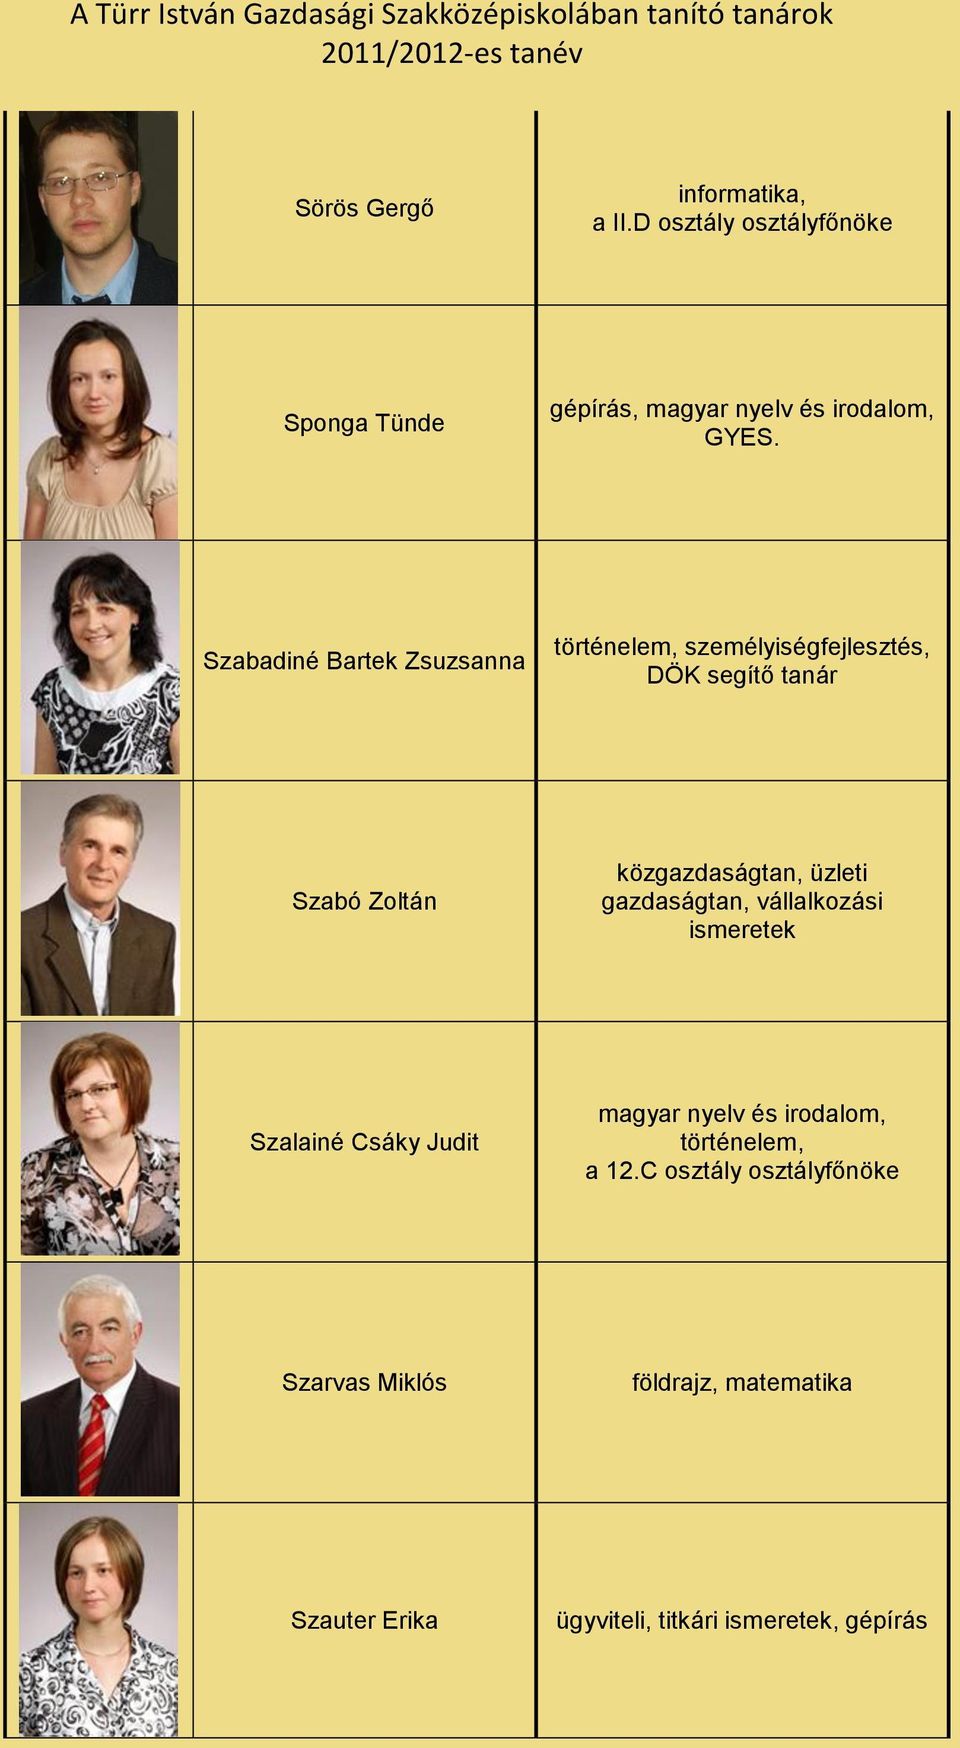 üzleti gazdaságtan, vállalkozási ismeretek Szalainé Csáky Judit magyar nyelv és irodalom, történelem, a 12.